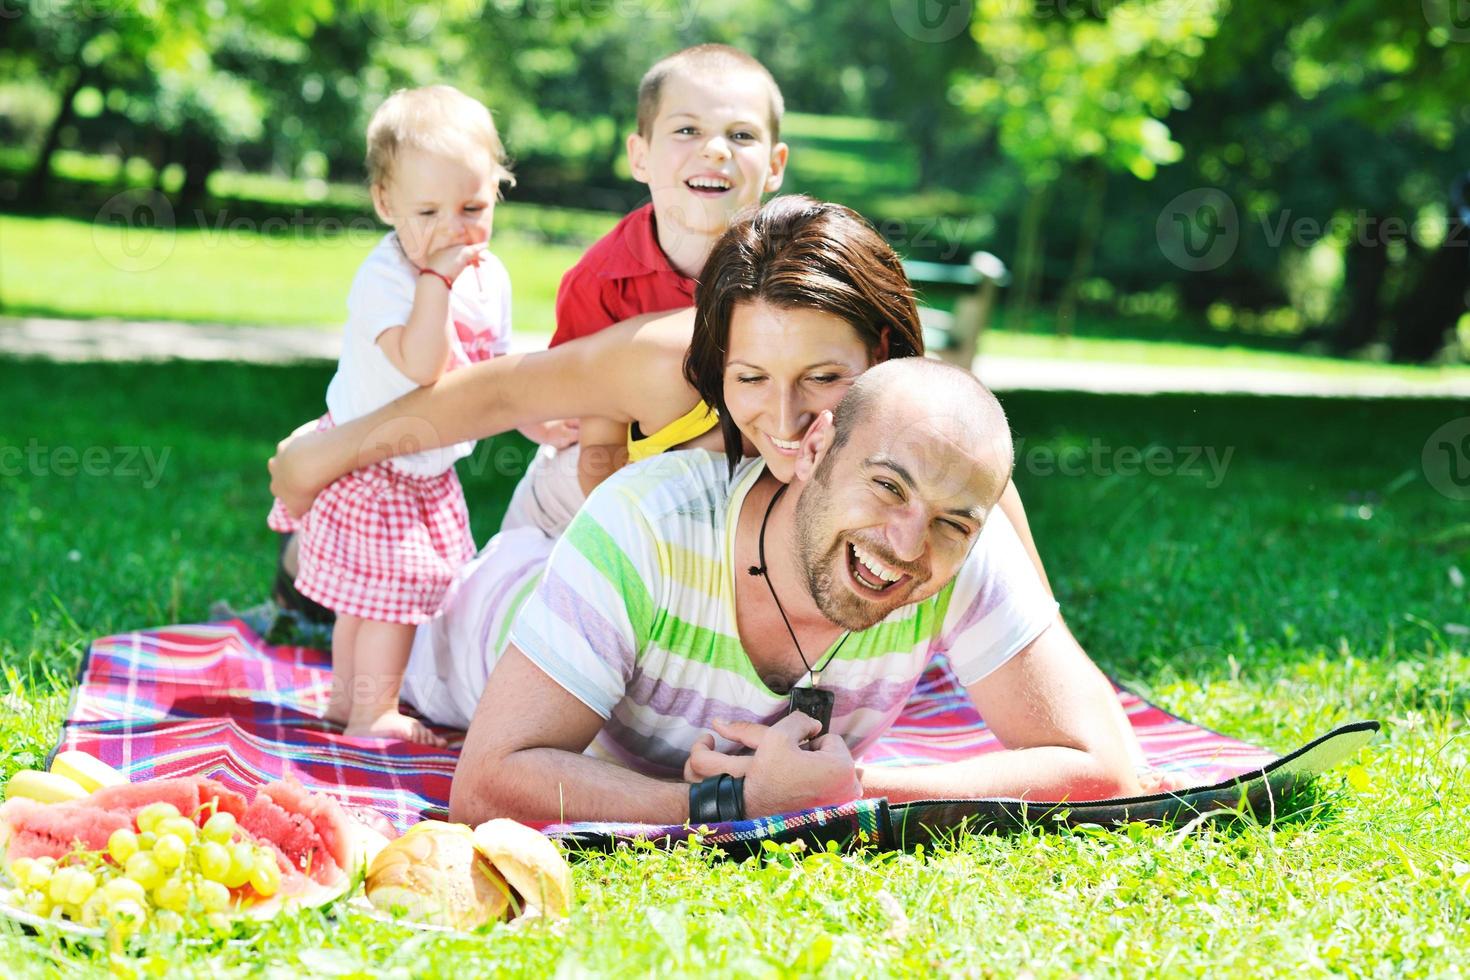 felice giovane coppia con i loro bambini si divertono al parco foto